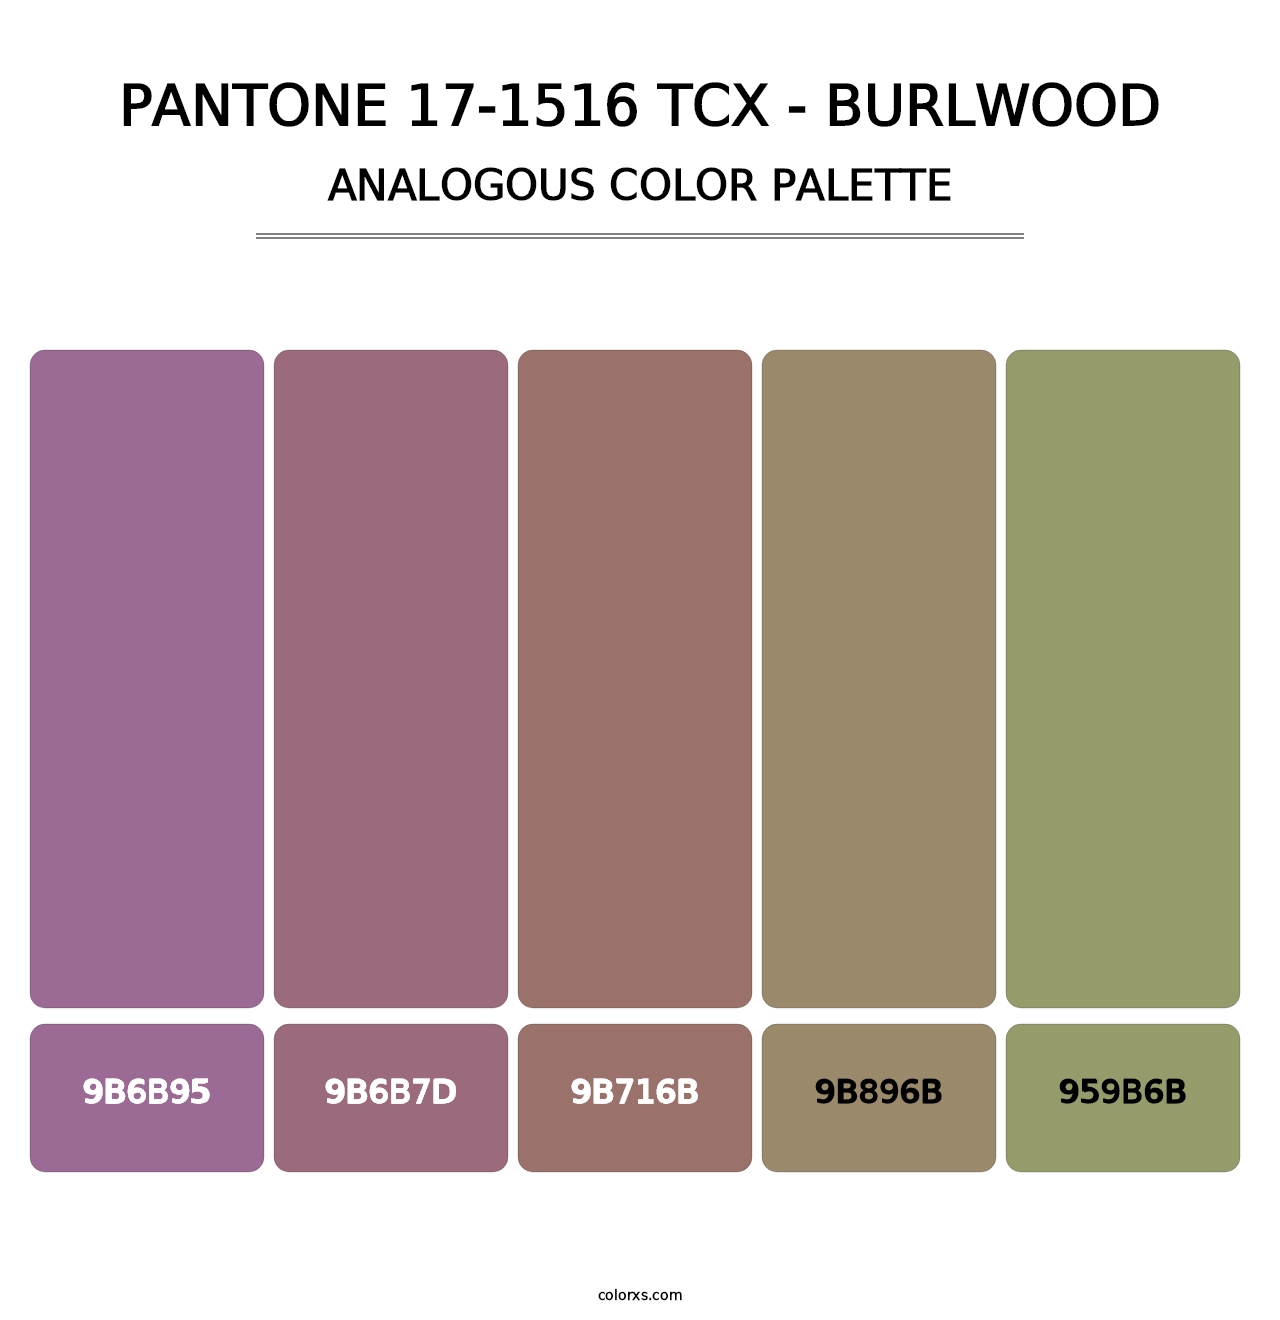 PANTONE 17-1516 TCX - Burlwood - Analogous Color Palette